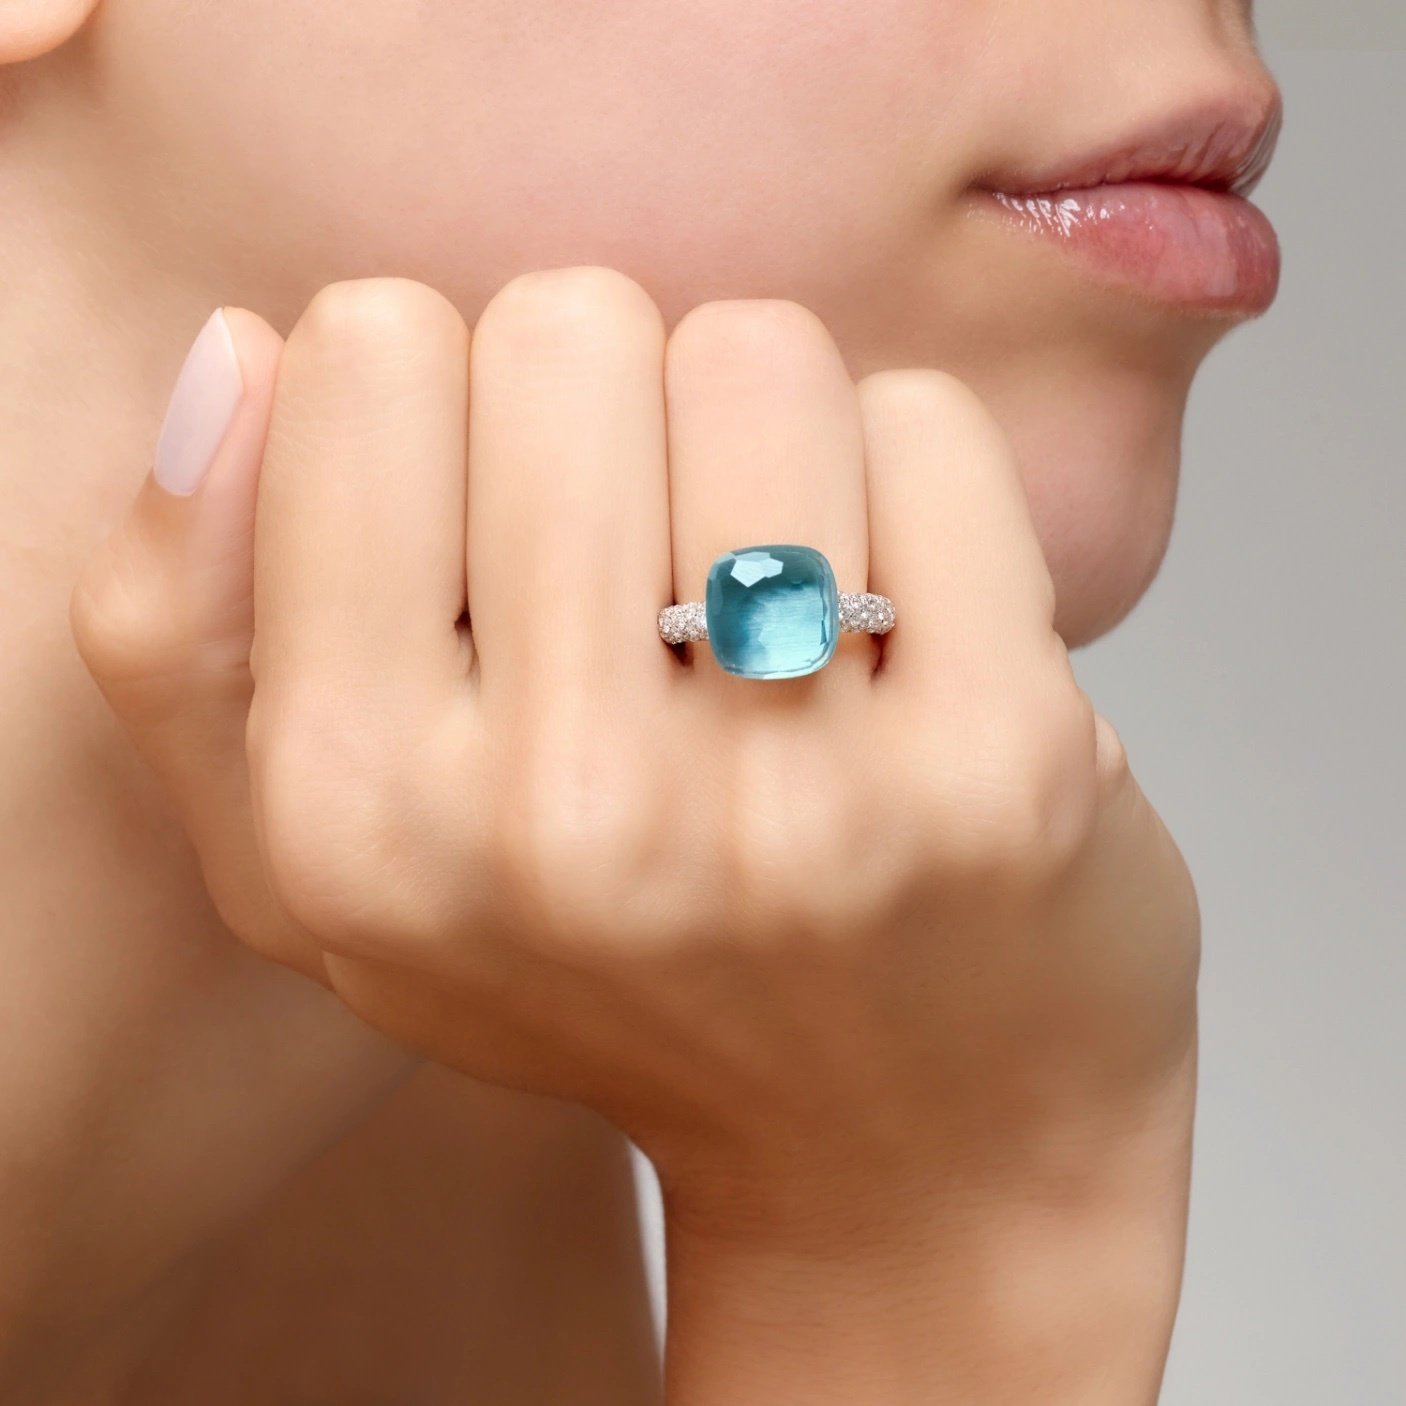 Pomellato Pomellato Nudo Maxi ring in 18 krt. witgoud met sky blue topaas en witte diamanten